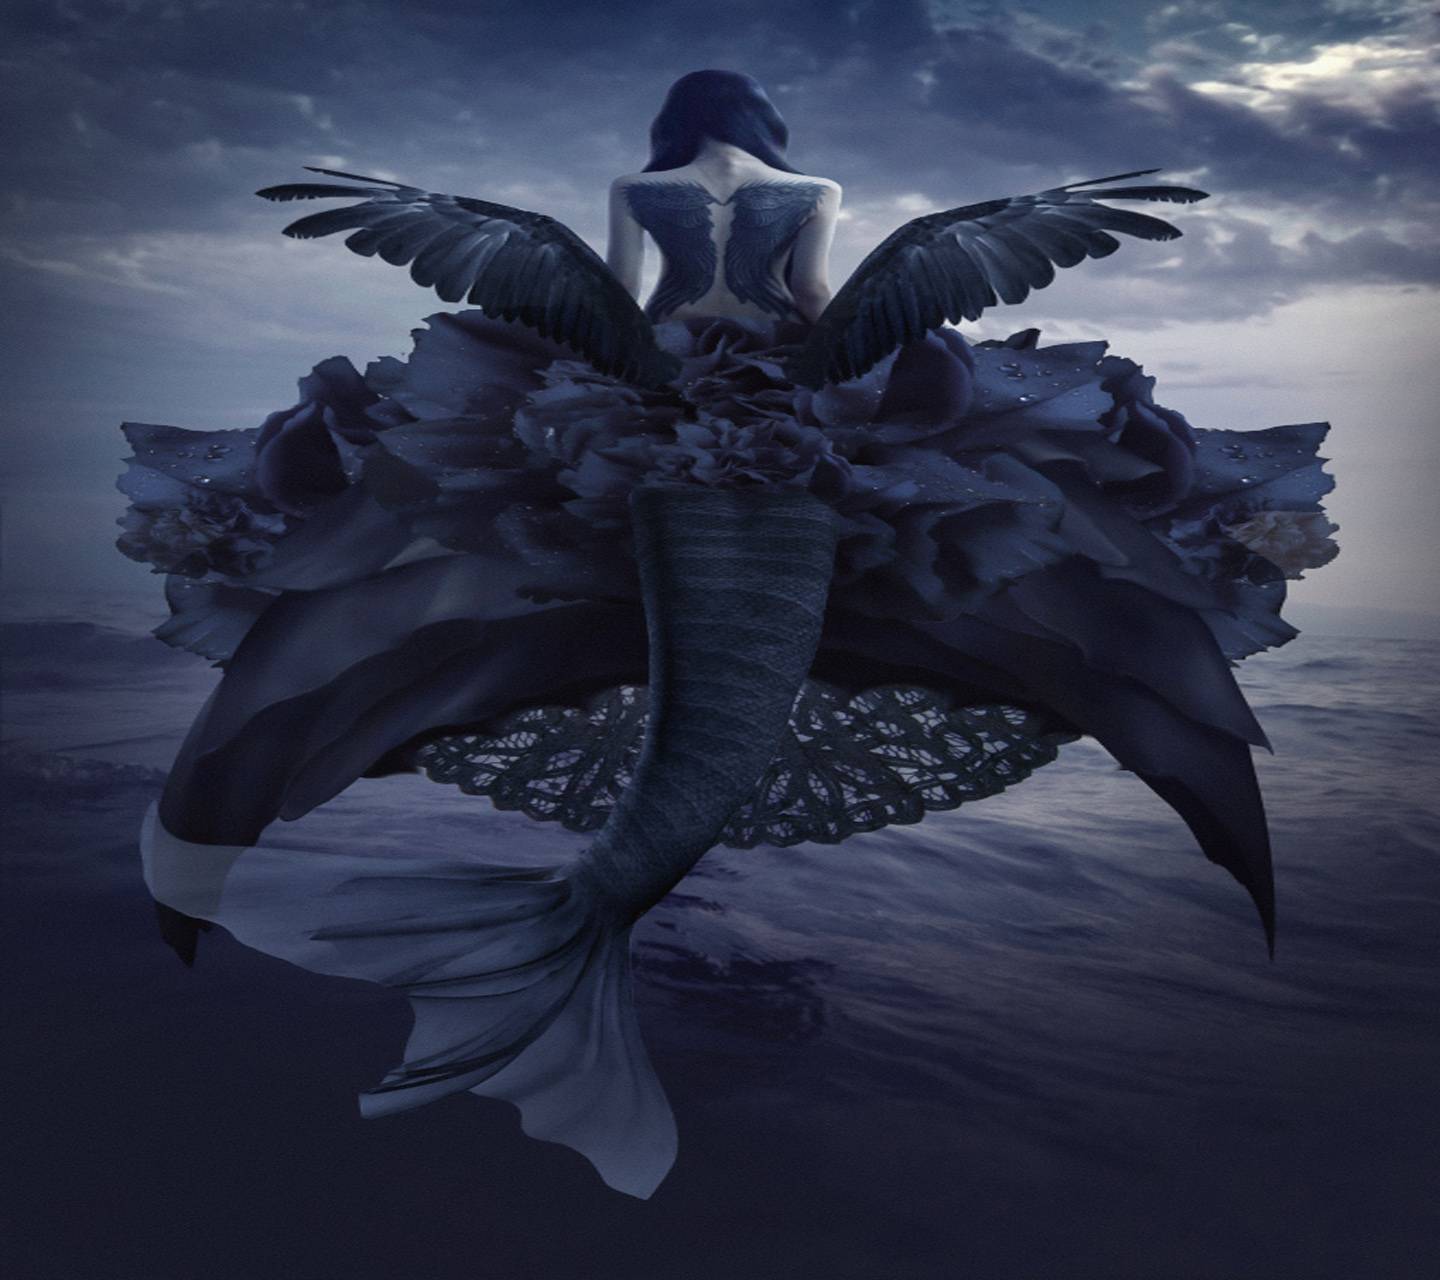 A woman sitting on top of the ocean - Mermaid